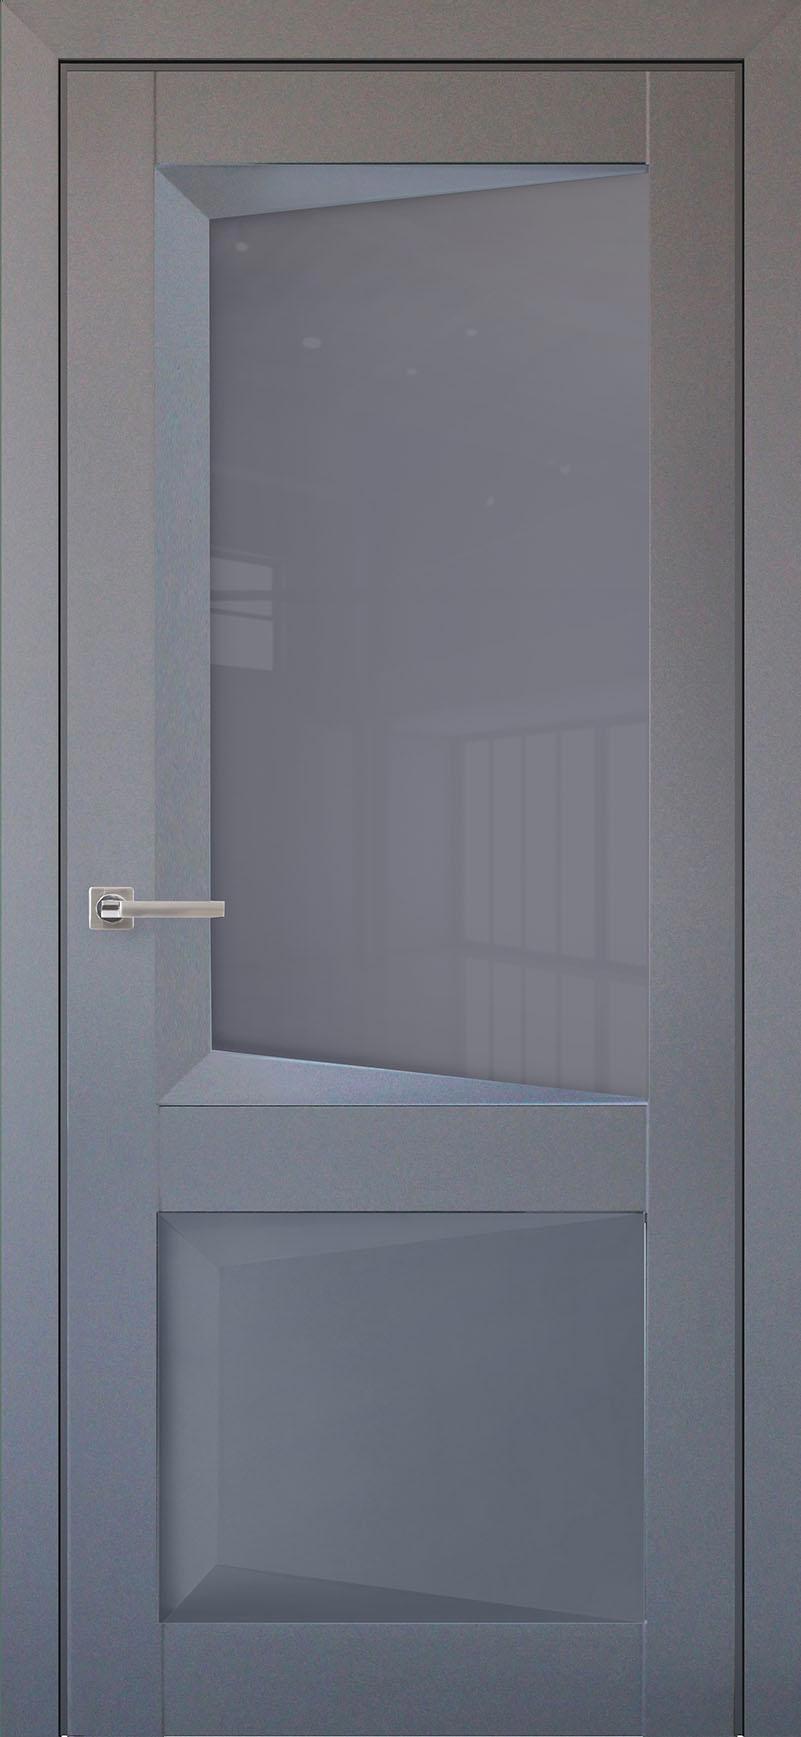 90903214 Межкомнатная дверь Перфекто 108 остеклённая без замка и петель в комплекте 200x80см серый STLM-0420040 UBERTURE